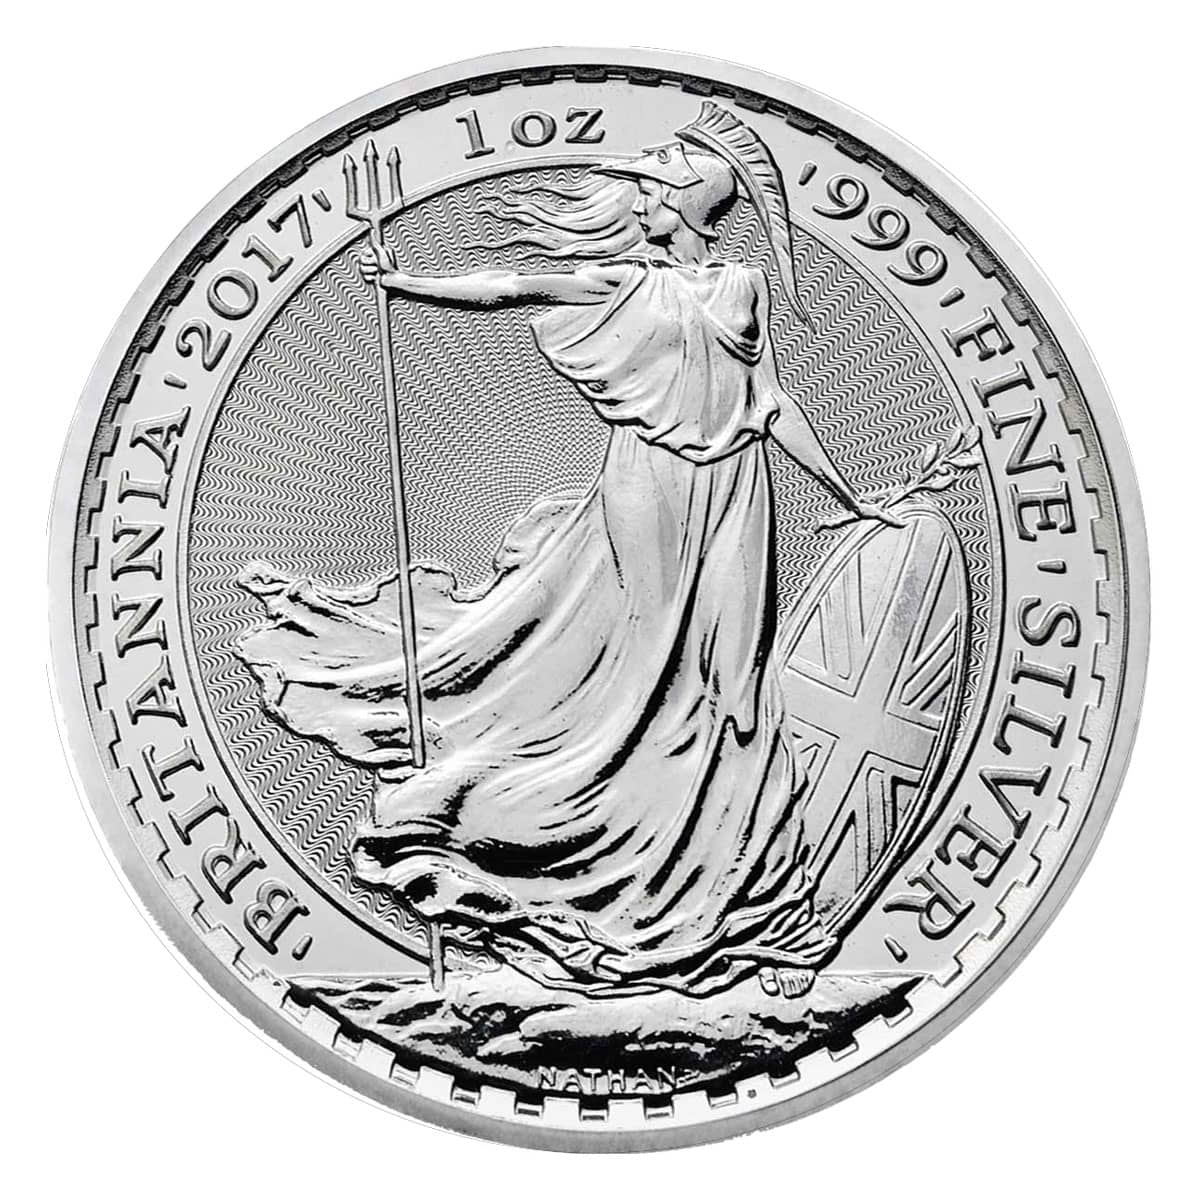 Britannia Coins | GovMint.com